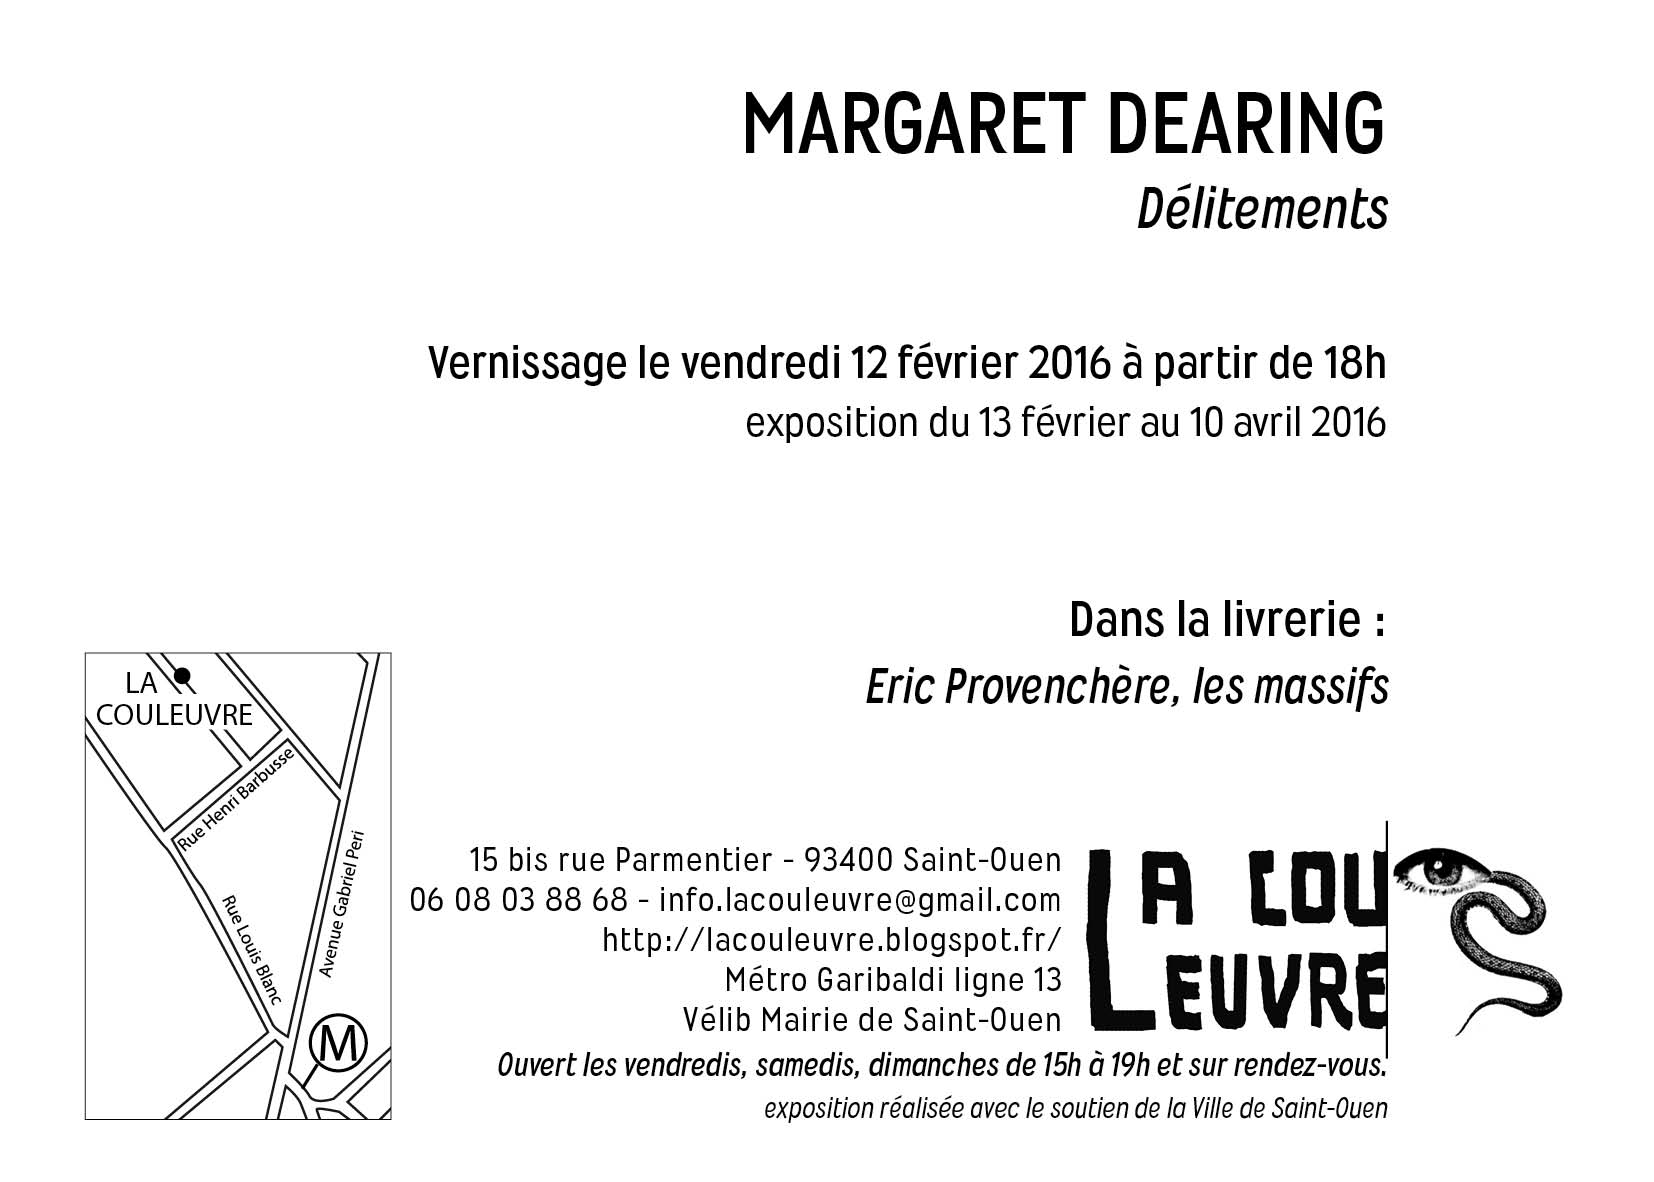 Délitements - La couleuvre/ exposition personnelle de Margaret Dearing / vernissage le vendredi 12 février 2016 de 18h à minuit. Exposition jusqu'au 10 avril 2016